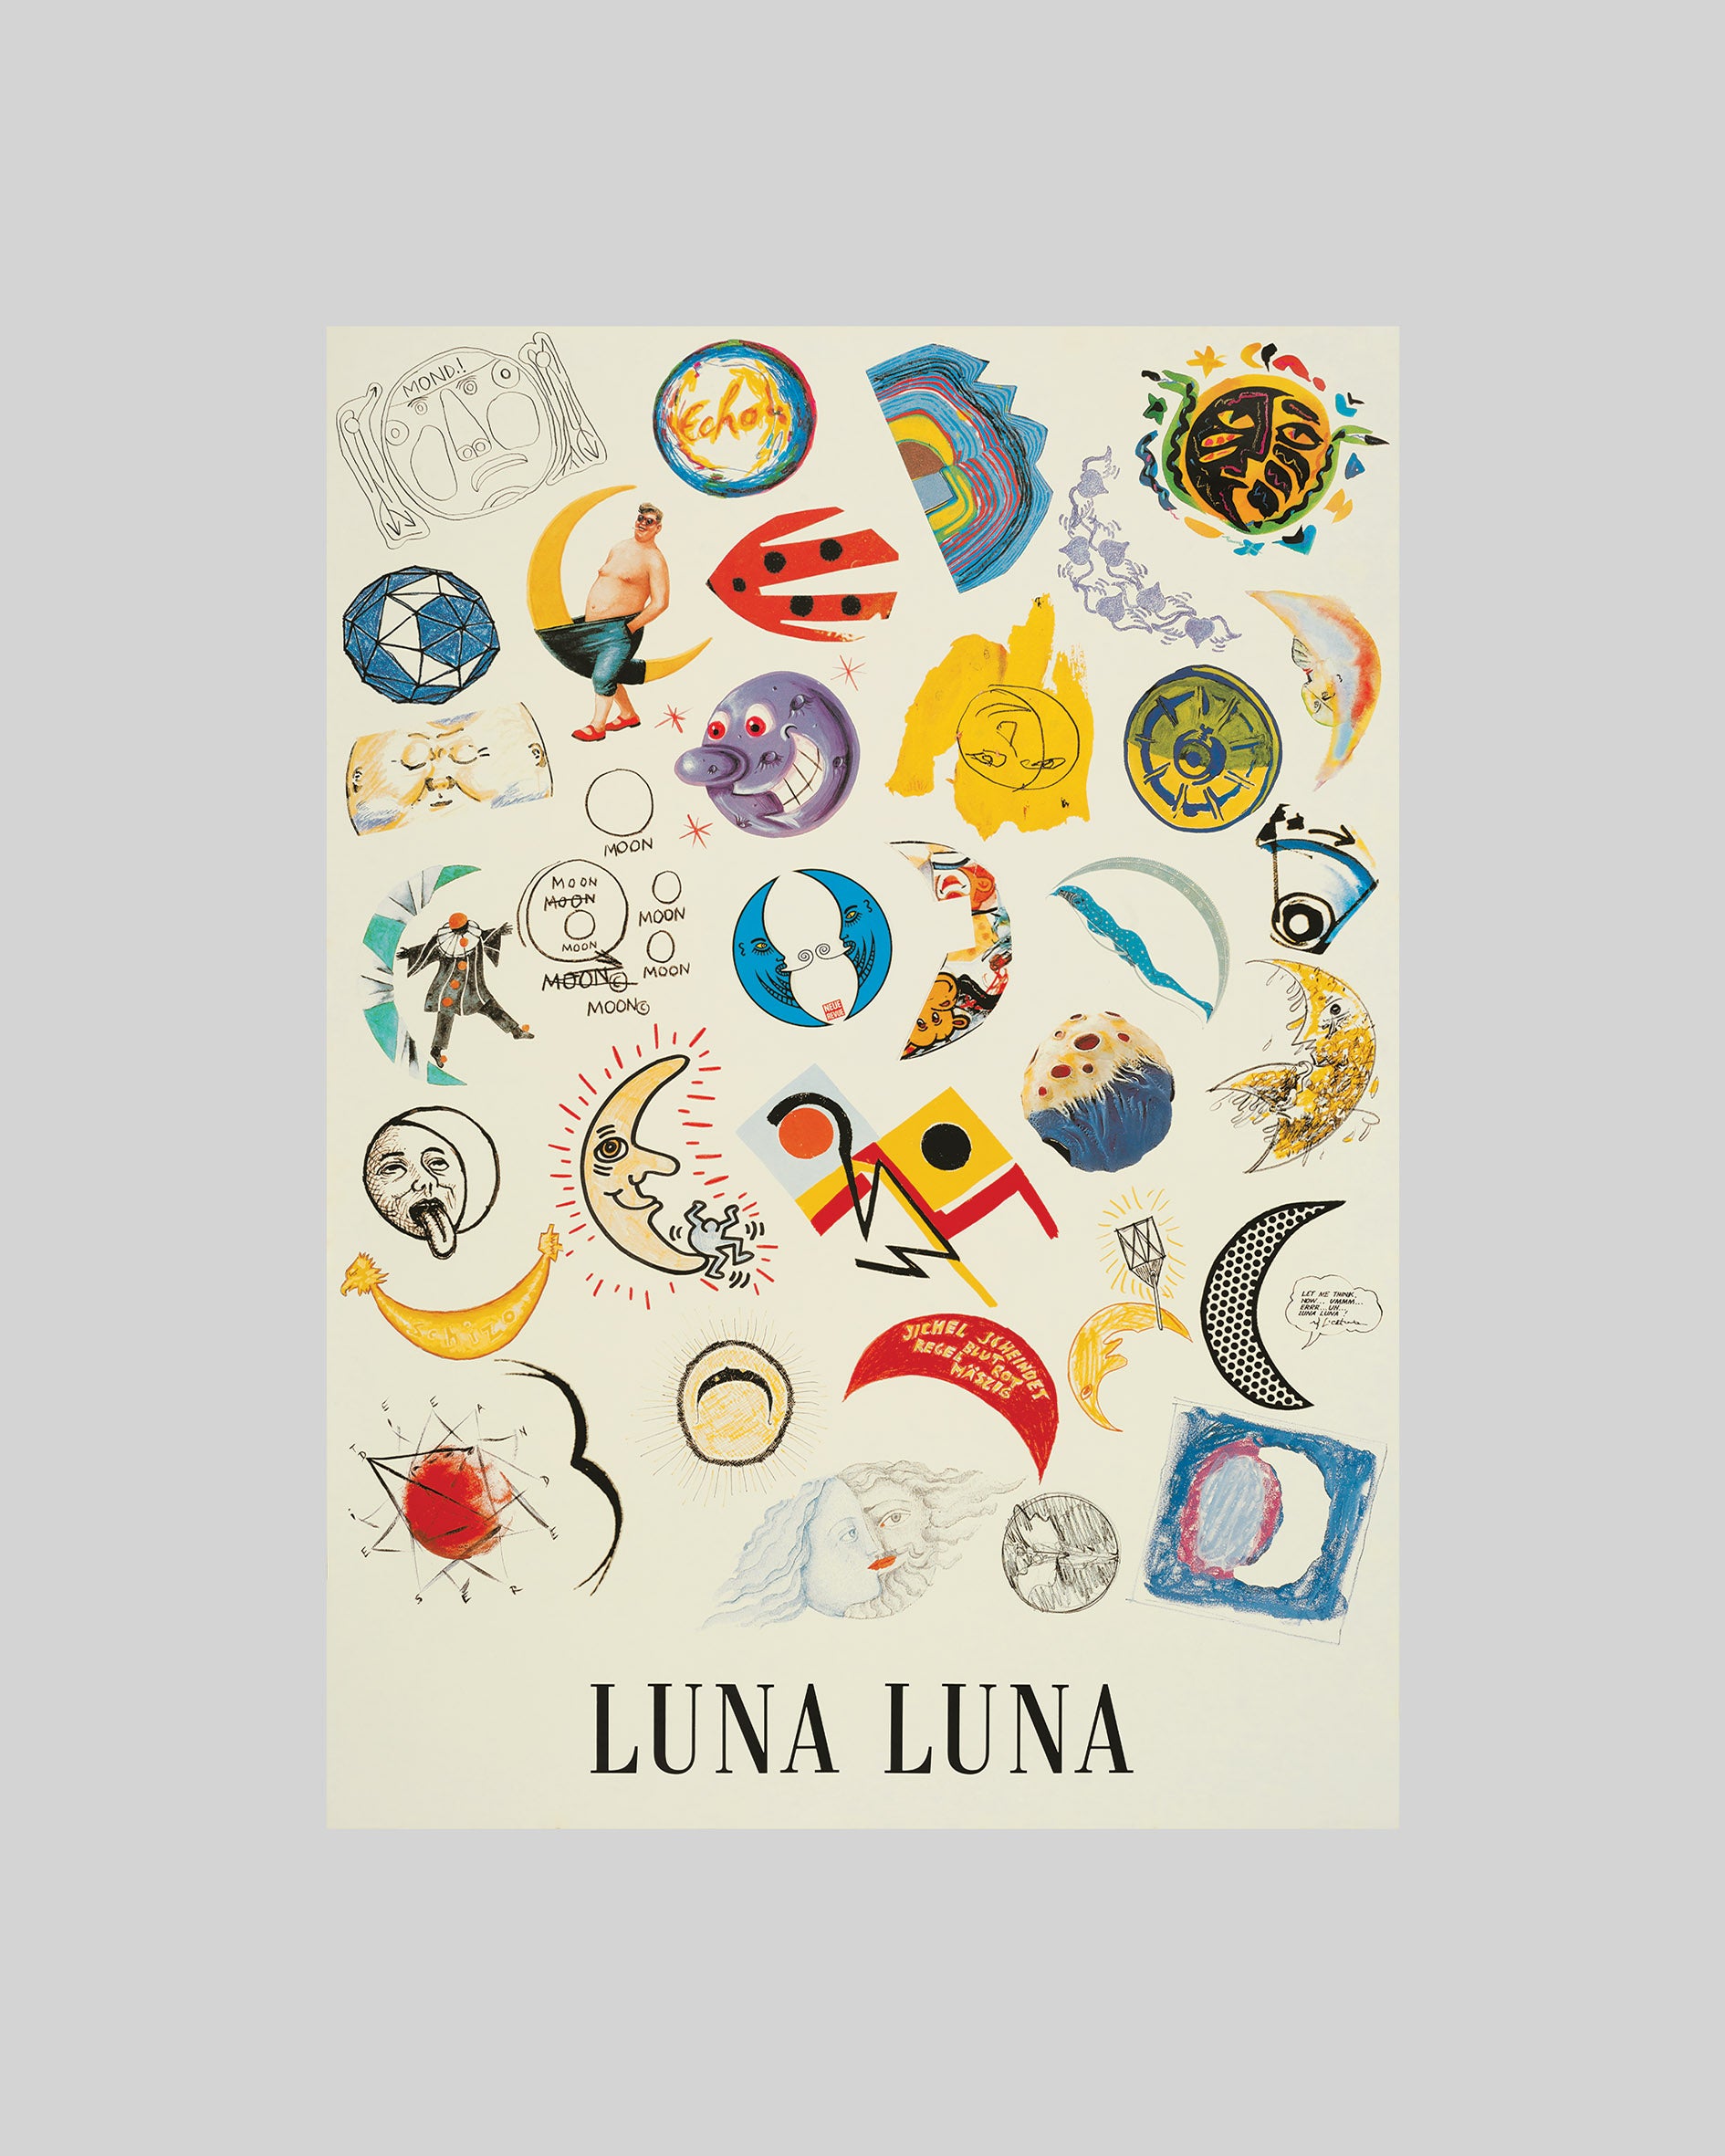 Luna, Moon Poster